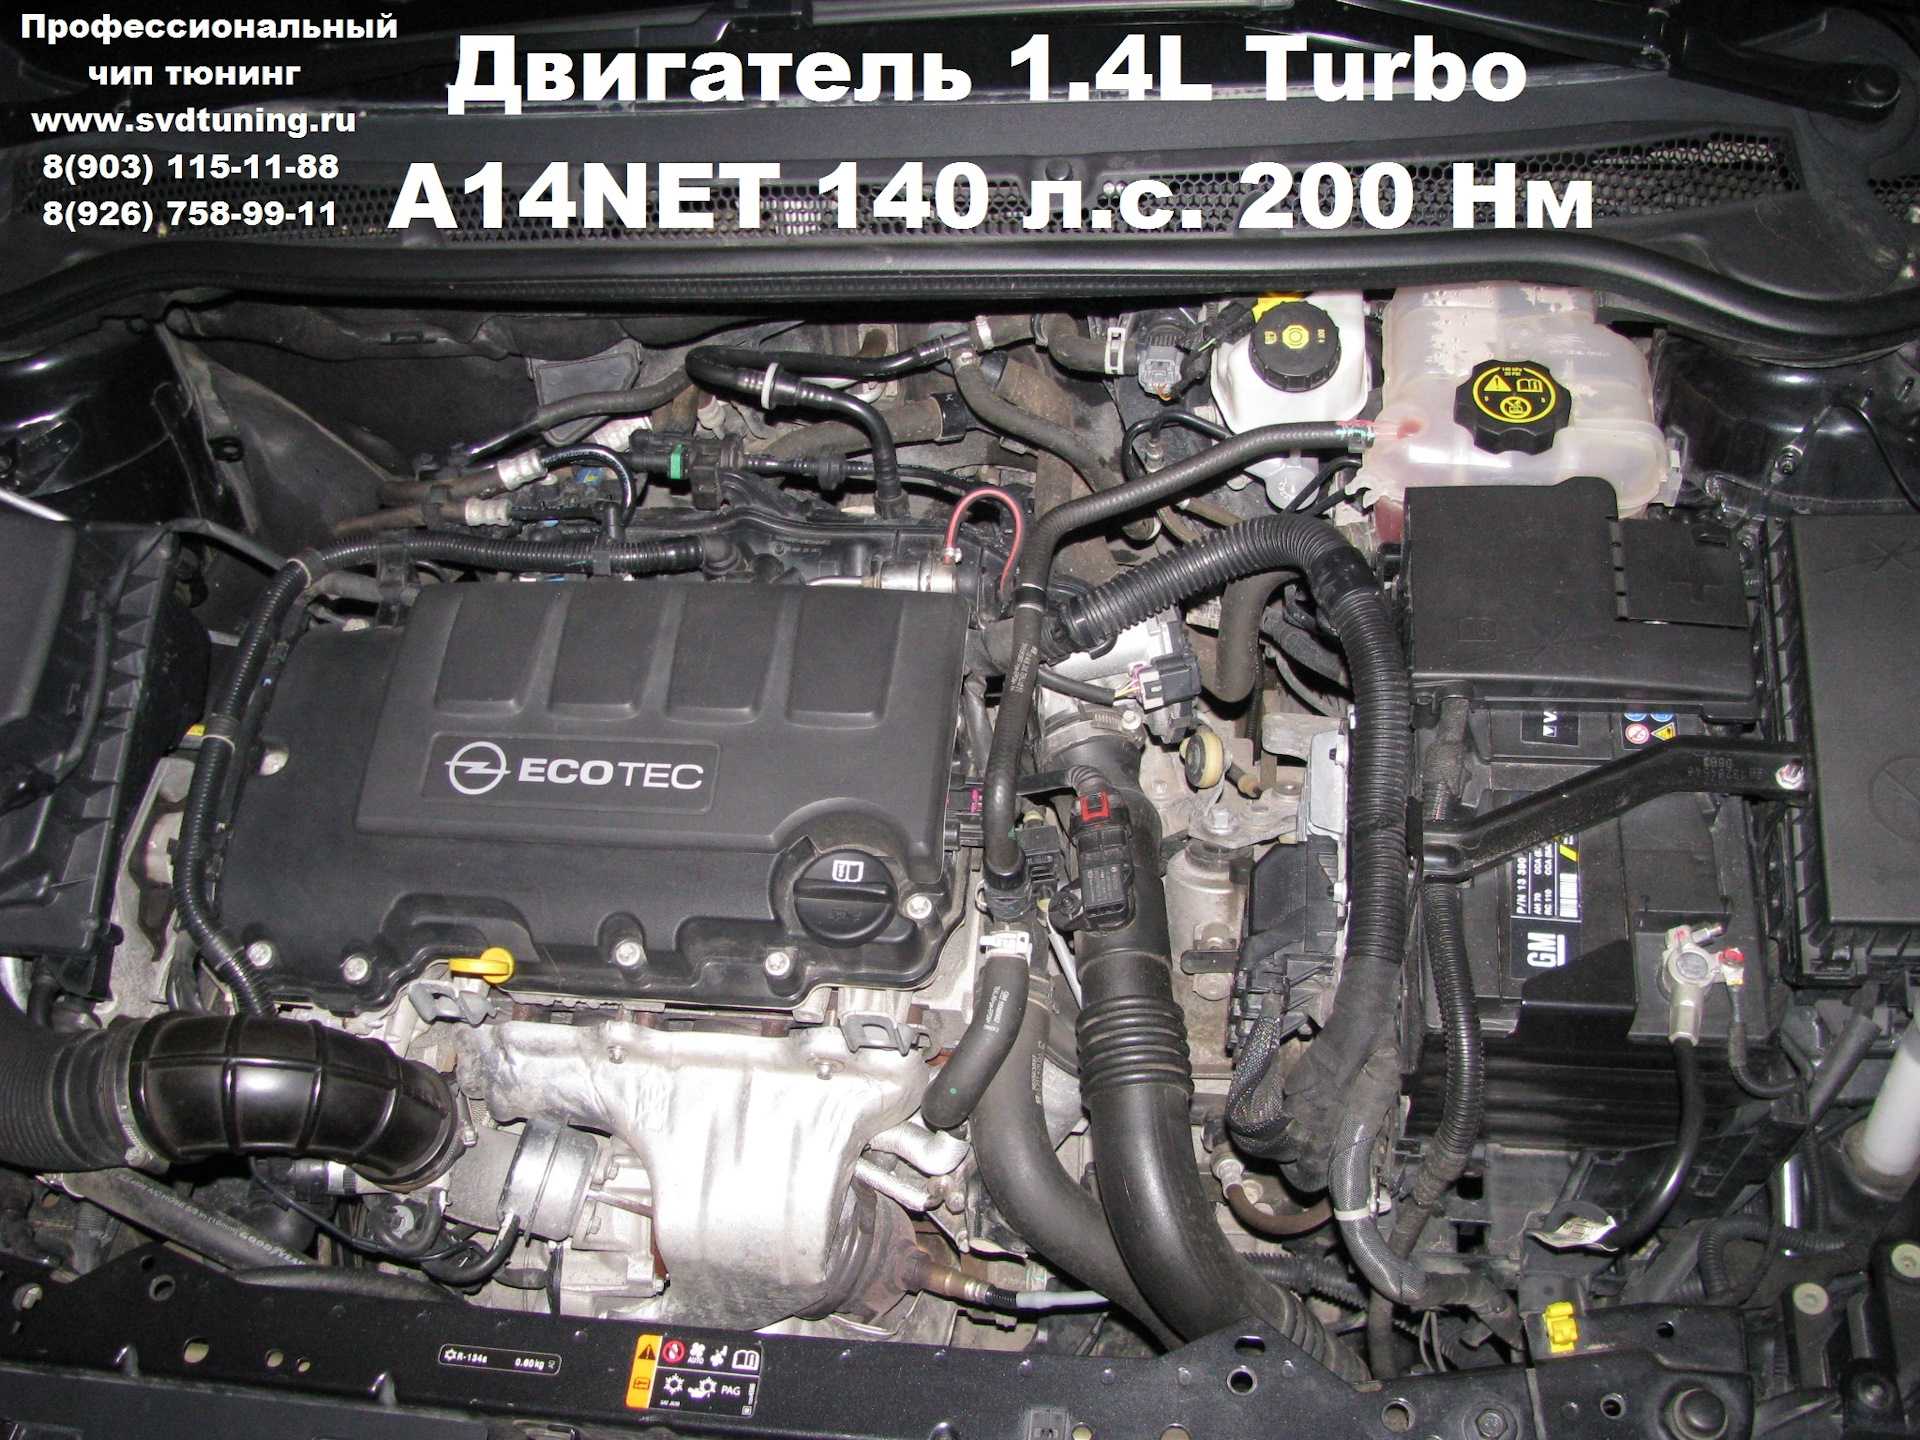 Где номер двигателя на астре. Двигатель Опель Мокка 1.4 турбо. Двигатель Opel Astra j 1.4 Turbo. Opel Astra-j a14net.